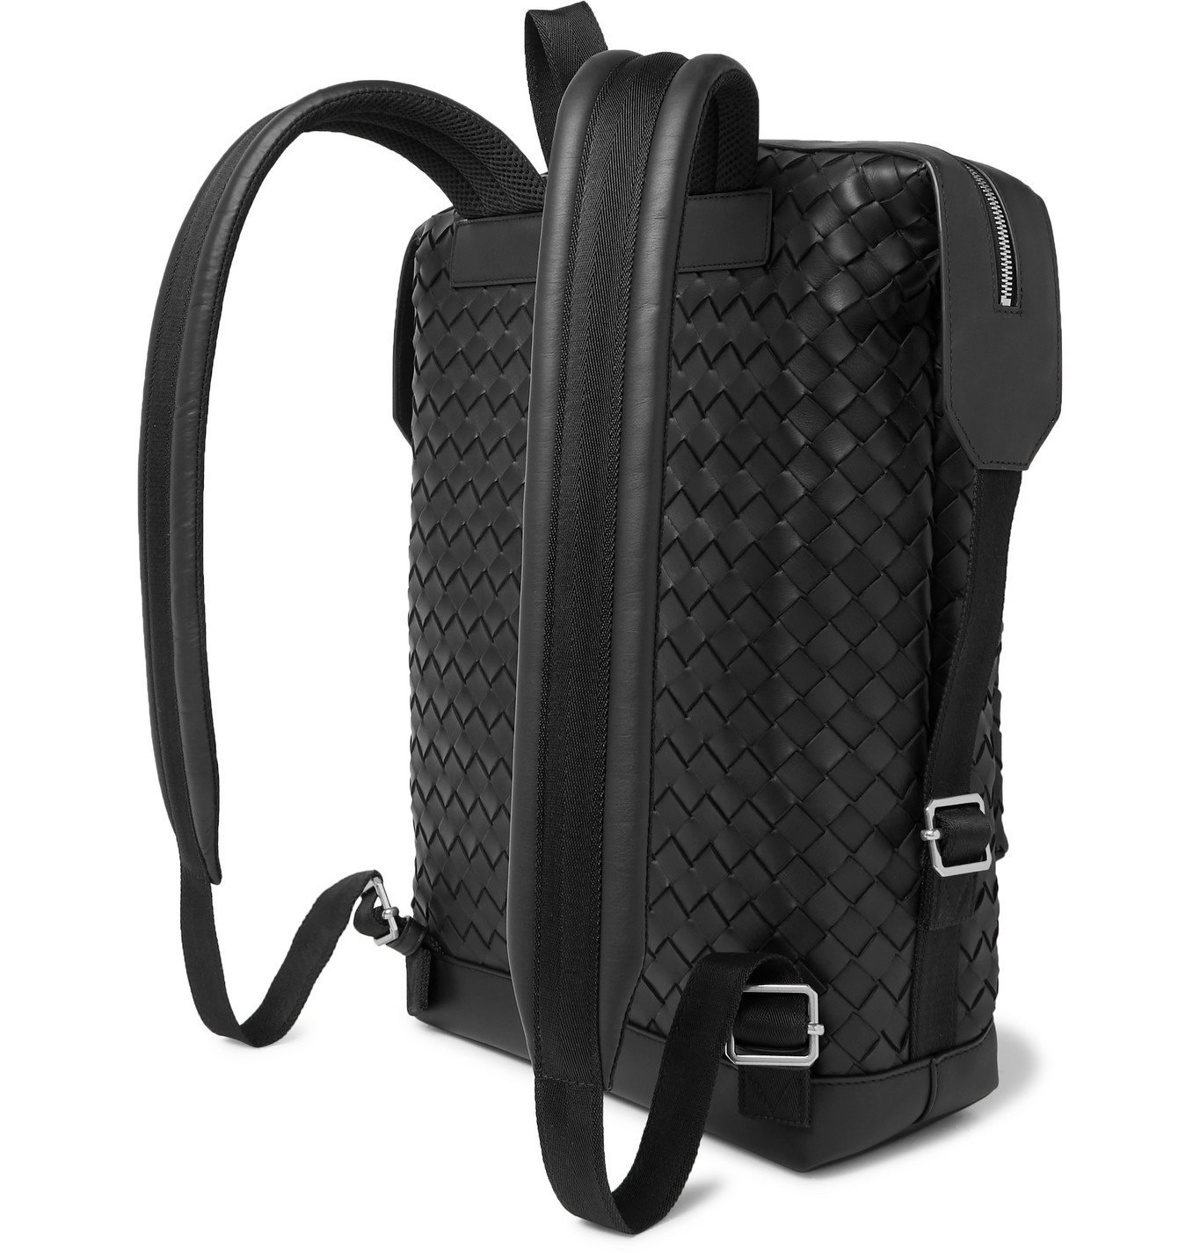 Bottega Veneta - Men - Intrecciato Leather Backpack Black